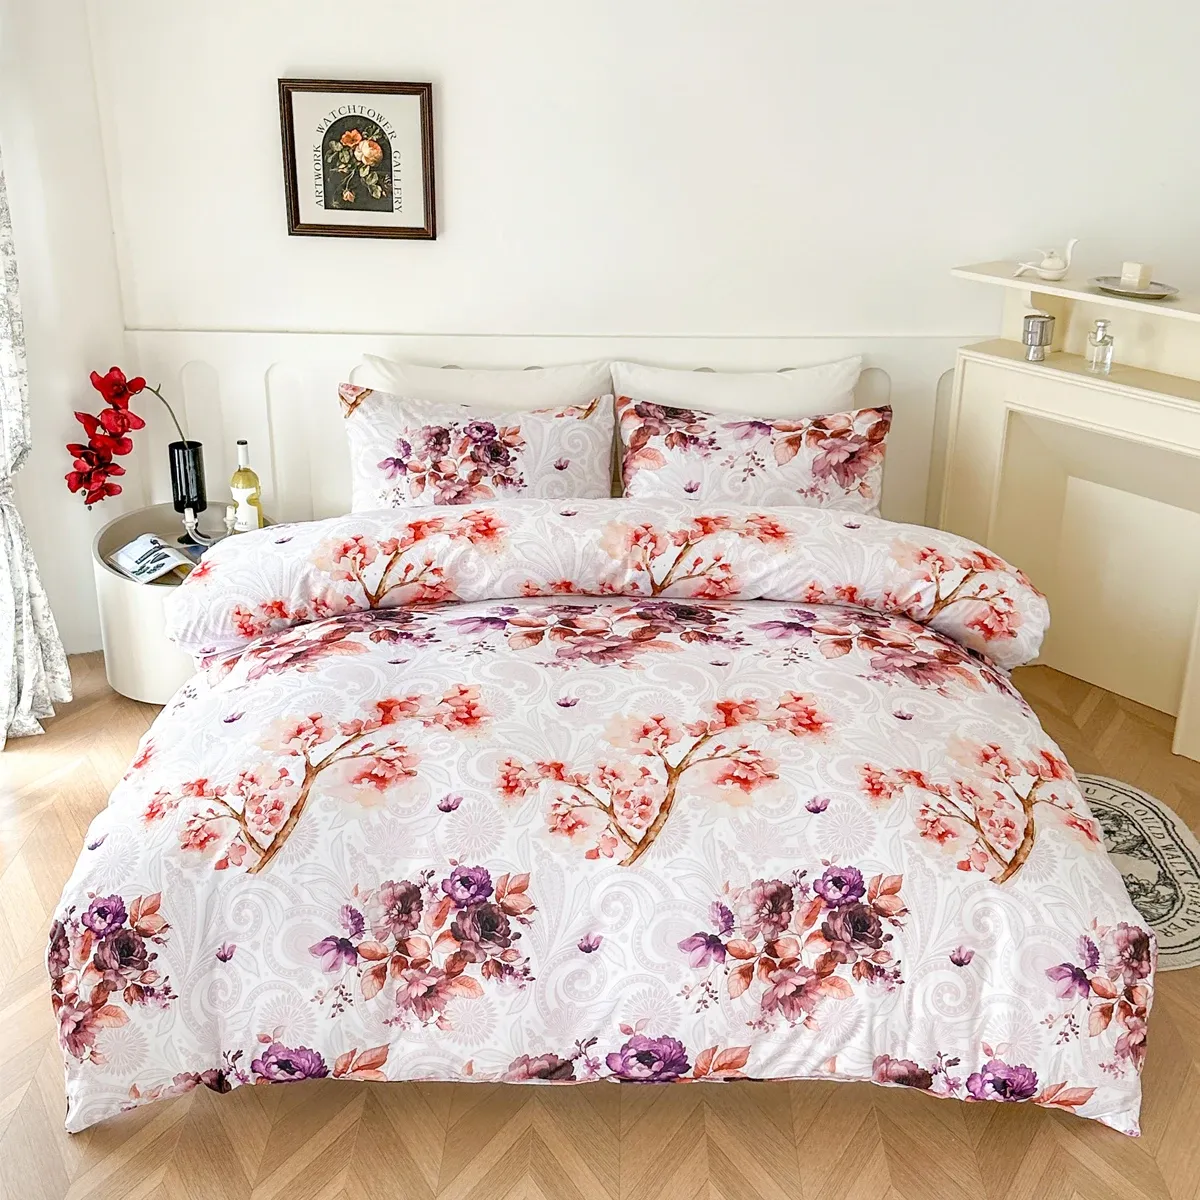 Set Bucephalus роскошные постельные принадлежности, набор европейских американских размеров. Помодея для двуспальной подставки для двуспальной одежды